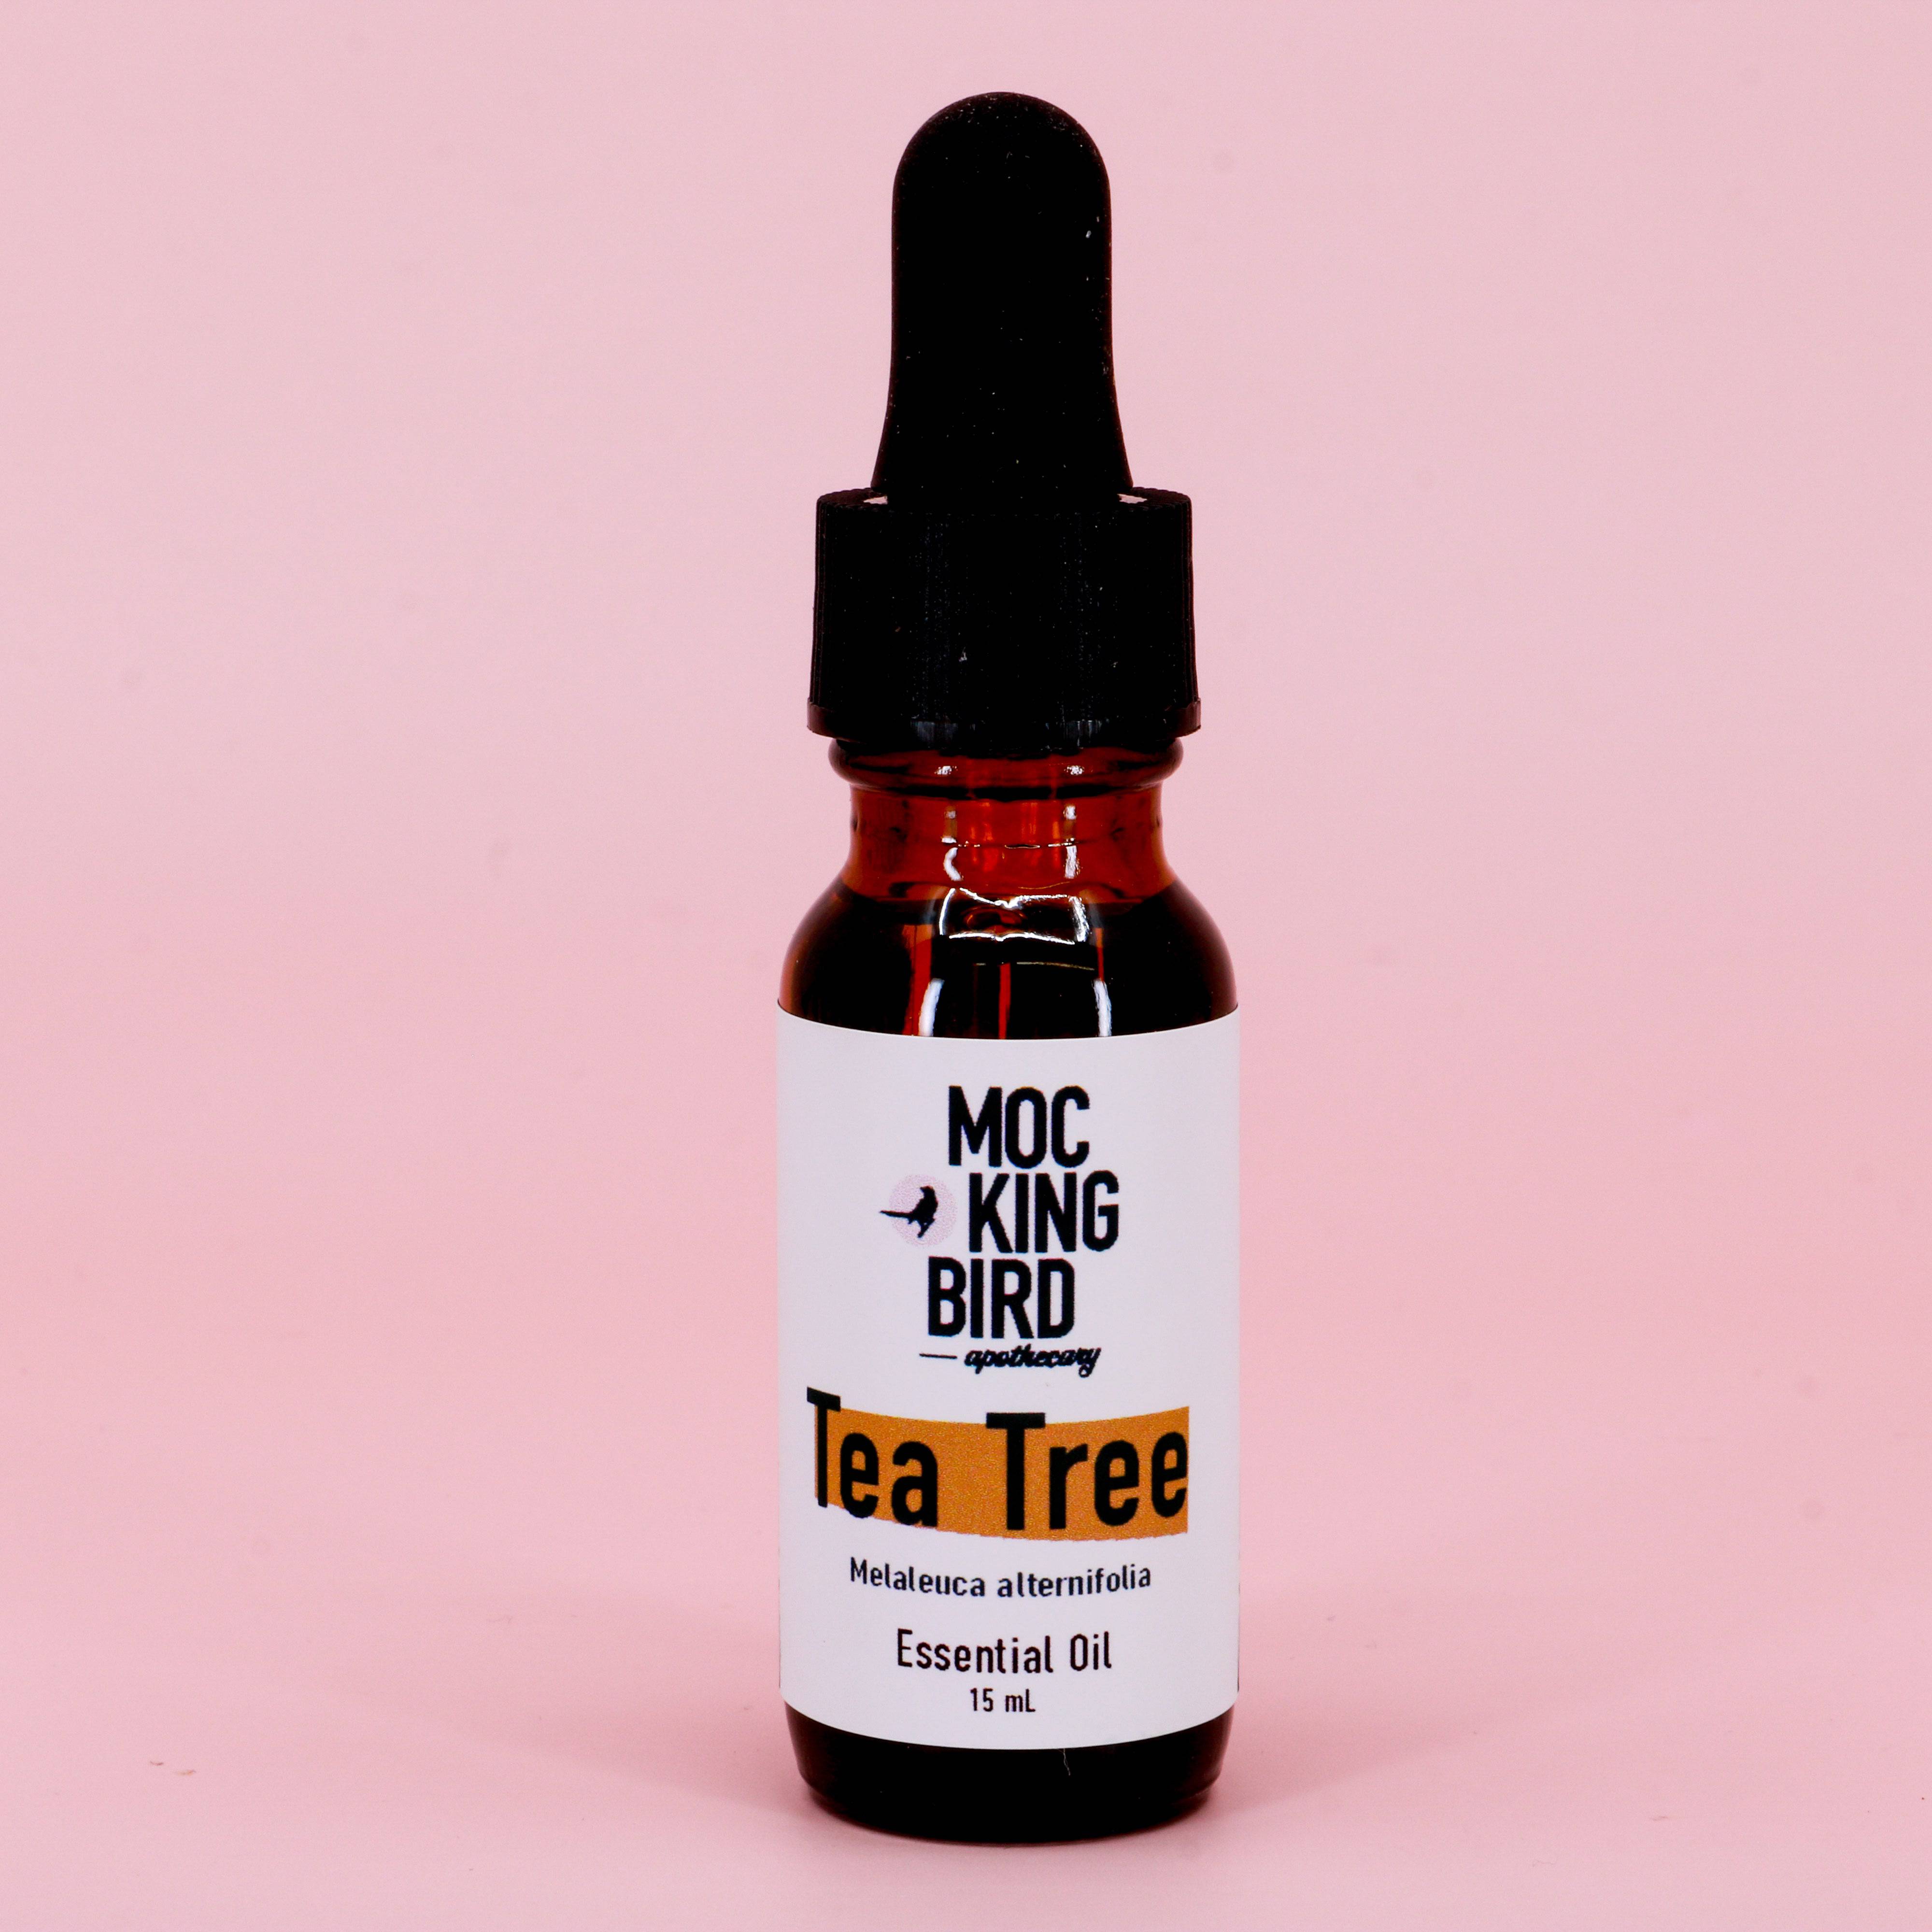 Tea Tree Essential Oil (Melaleuca alternifolia) - The Mockingbird Apothecary & General Store